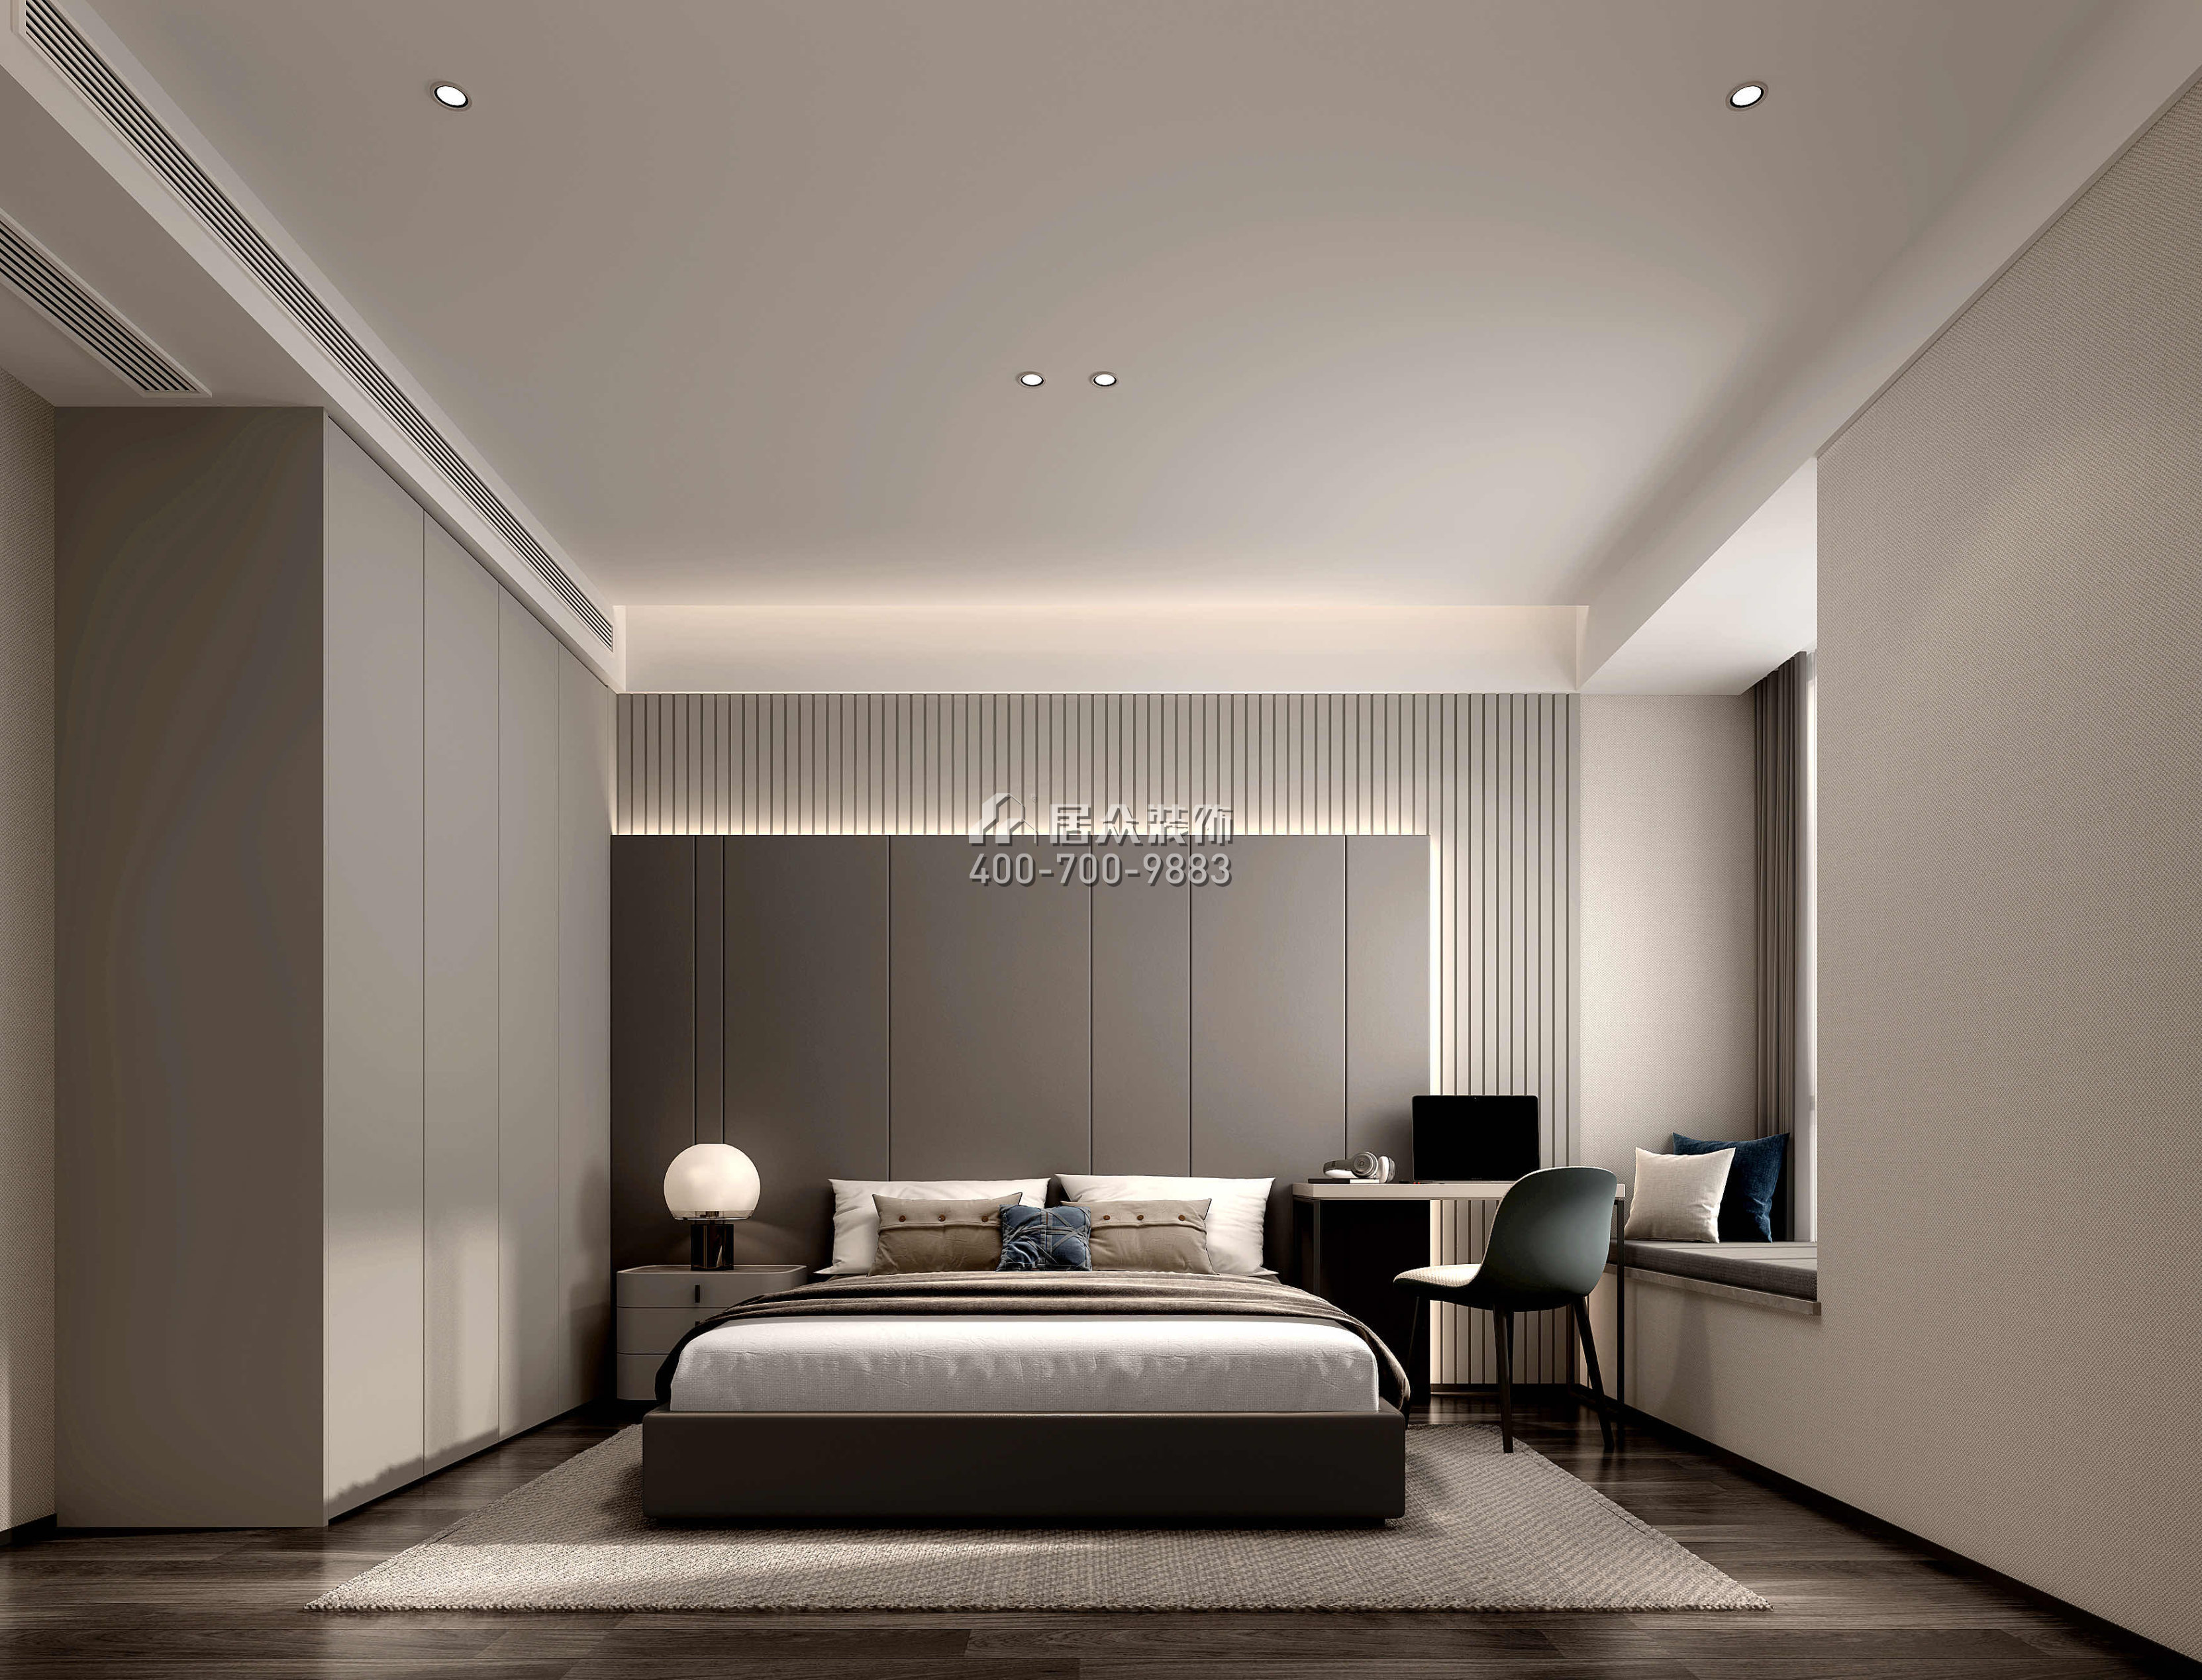 嘉华星际湾238平方米现代简约风格平层户型卧室装修效果图